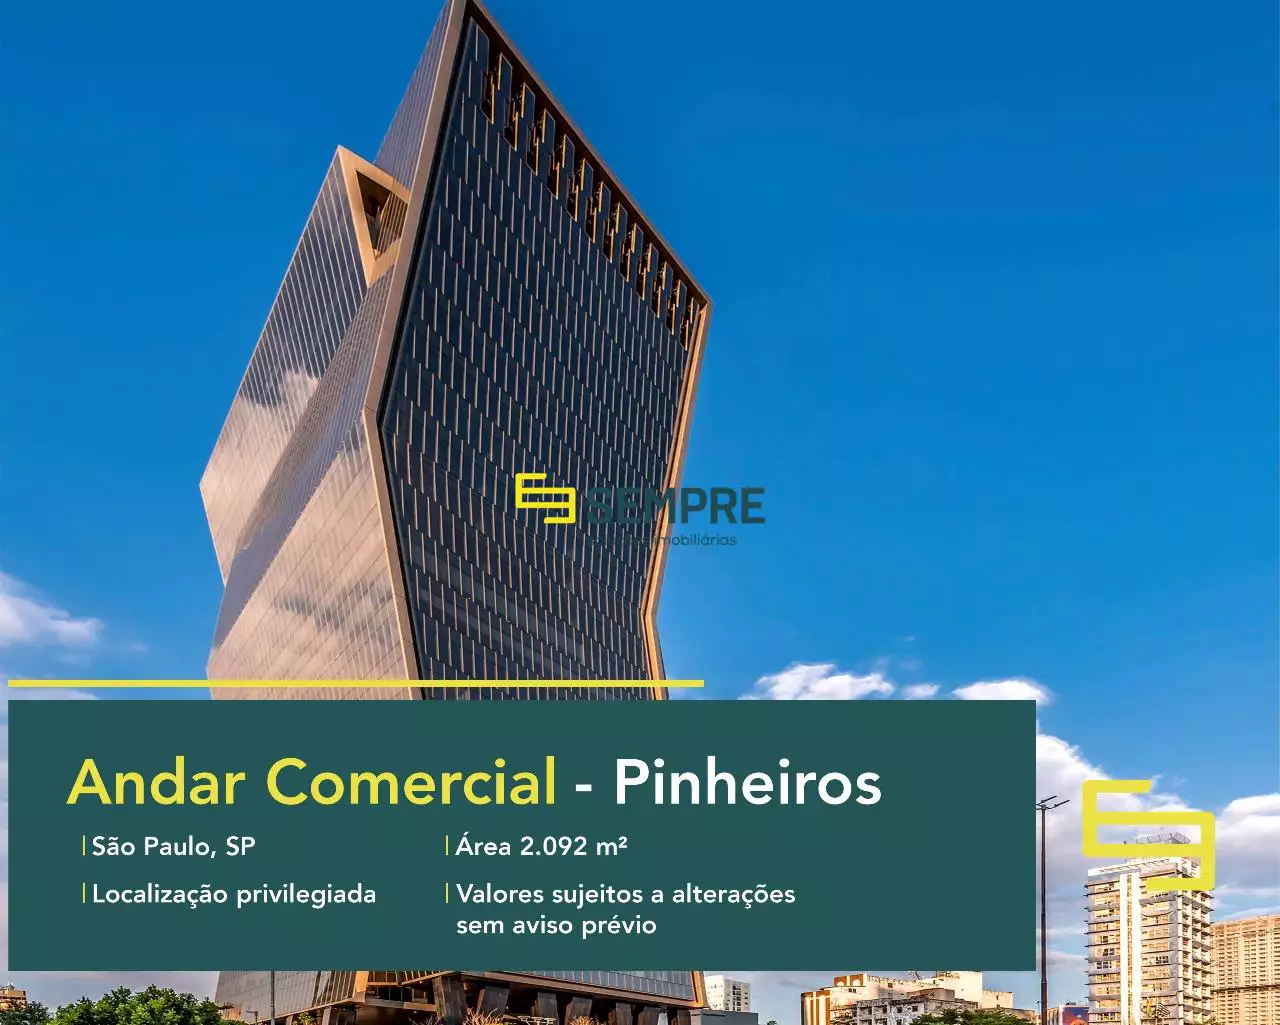 Laje corporativa para alugar no Pinheiros em São Paulo, excelente localização. O ponto comercial conta com área de 2.092 m².